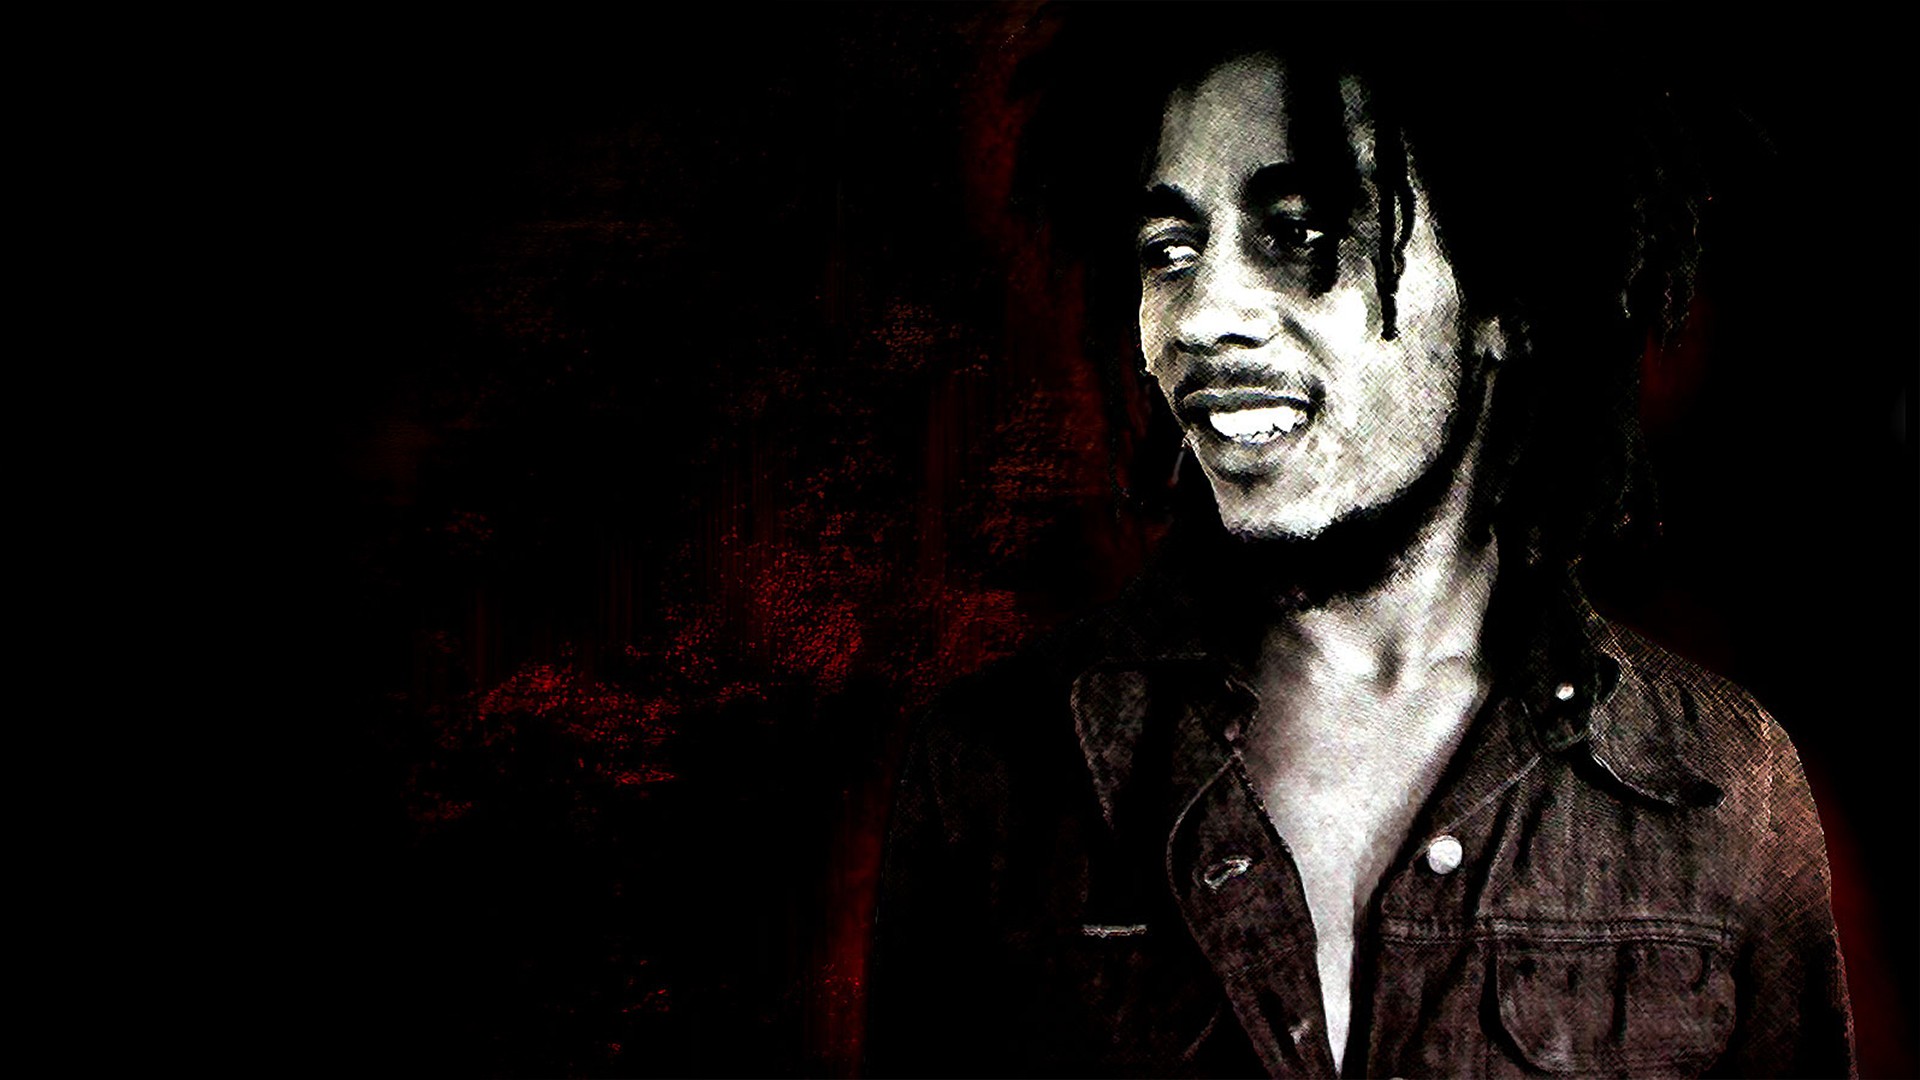 General 1920x1080 Bob Marley men artwork music celebrity singer